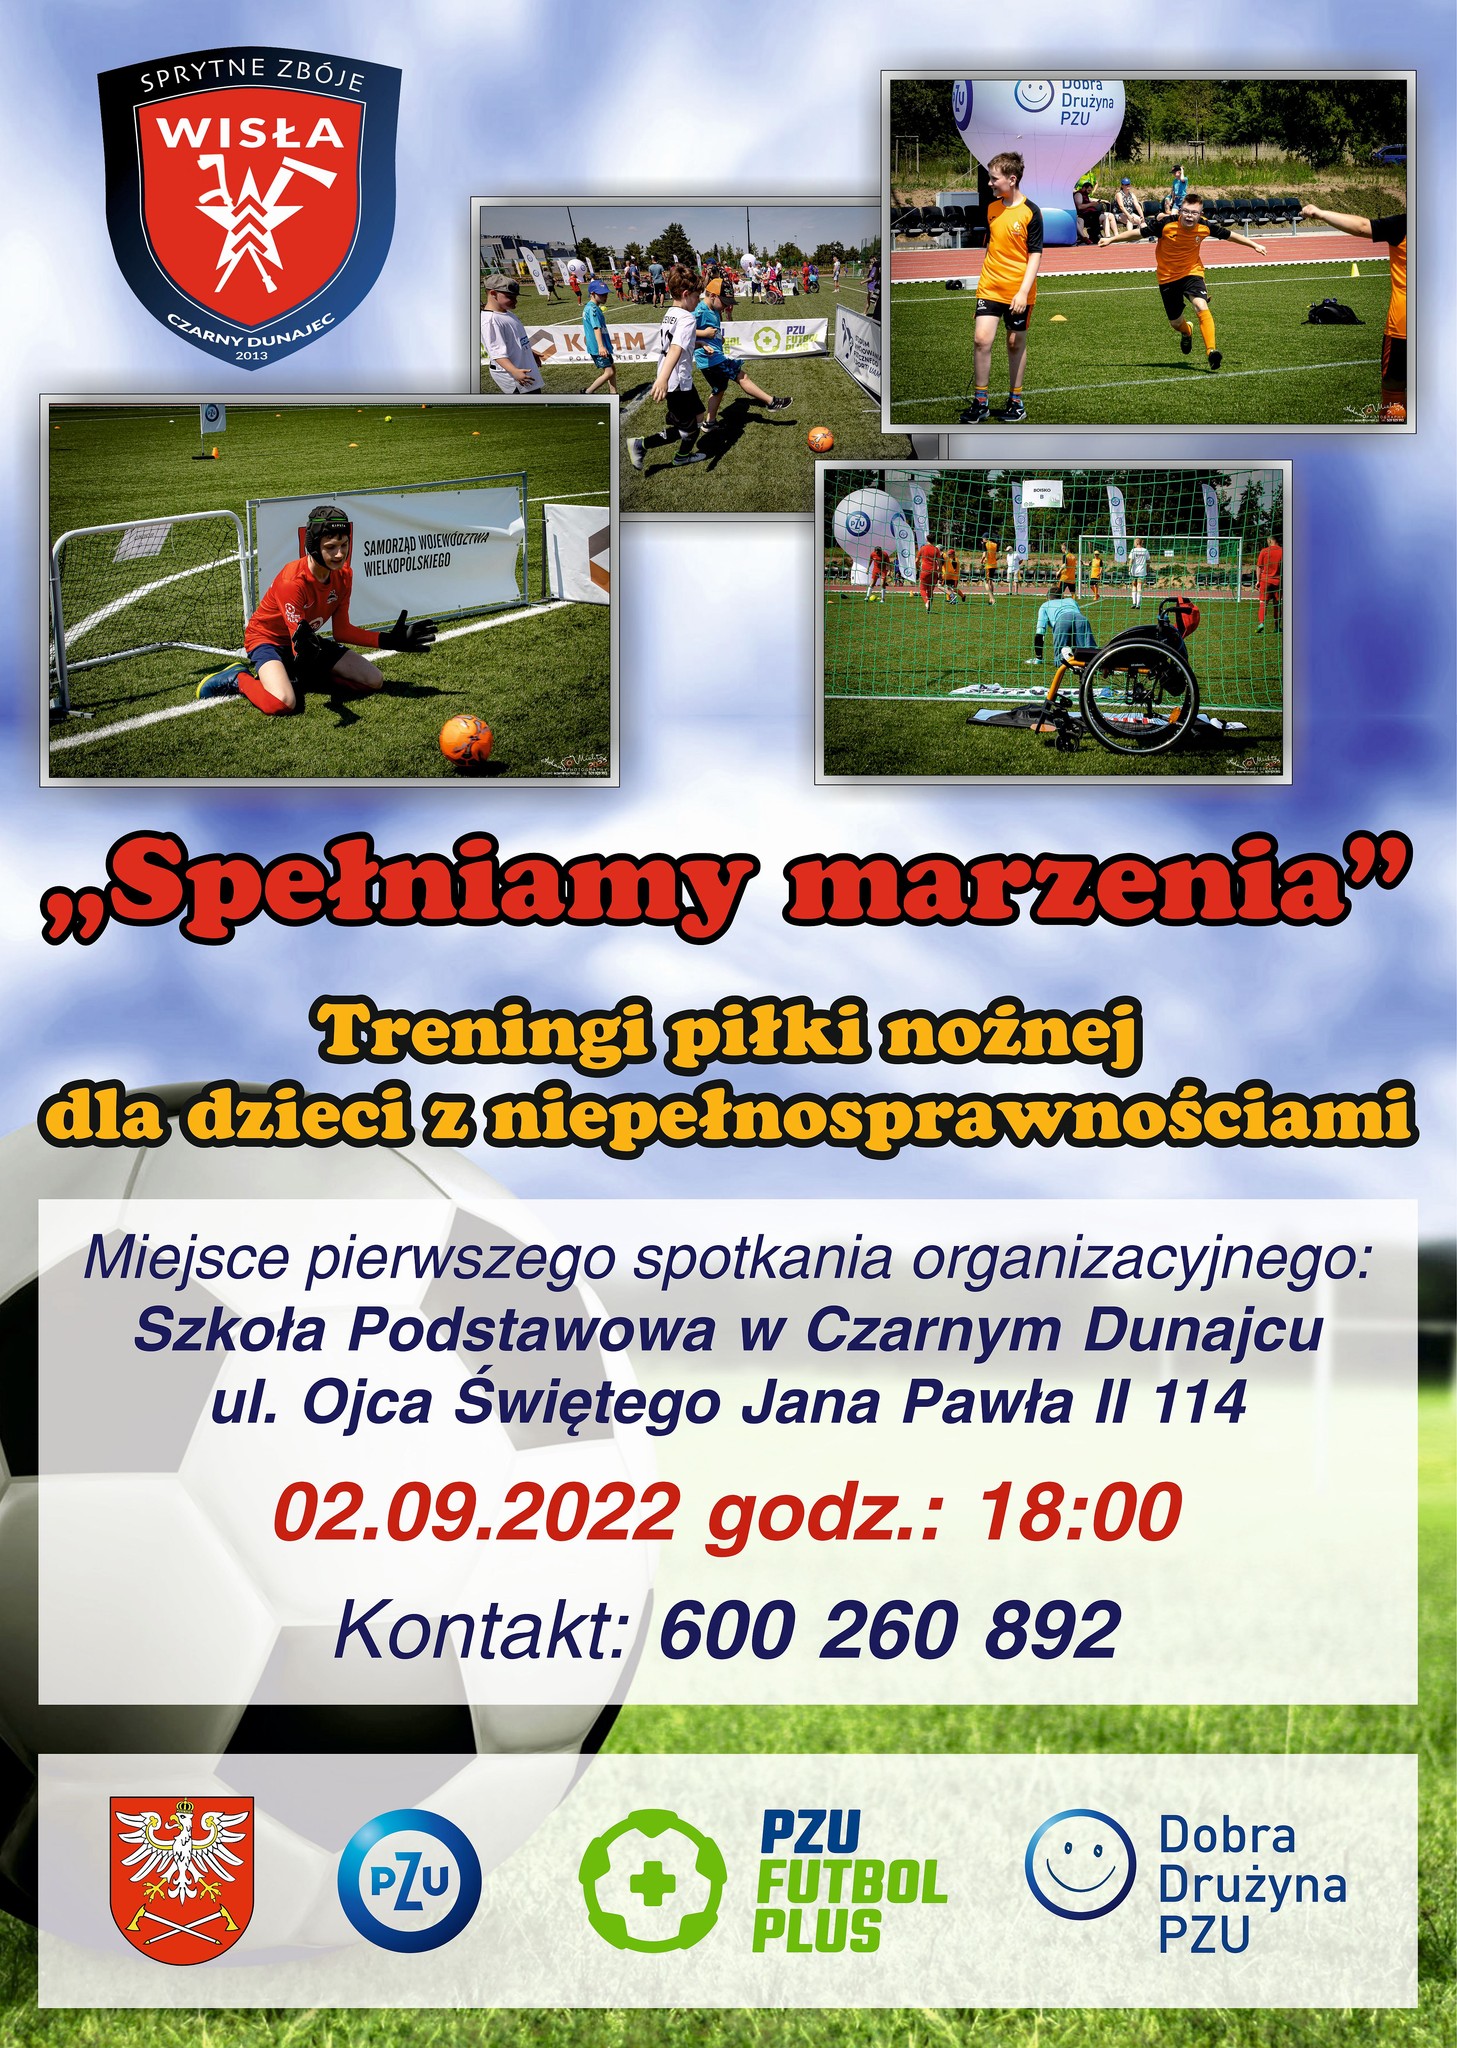 Treningi piłki nożnej dla dzieci z niepełnosprawnościami